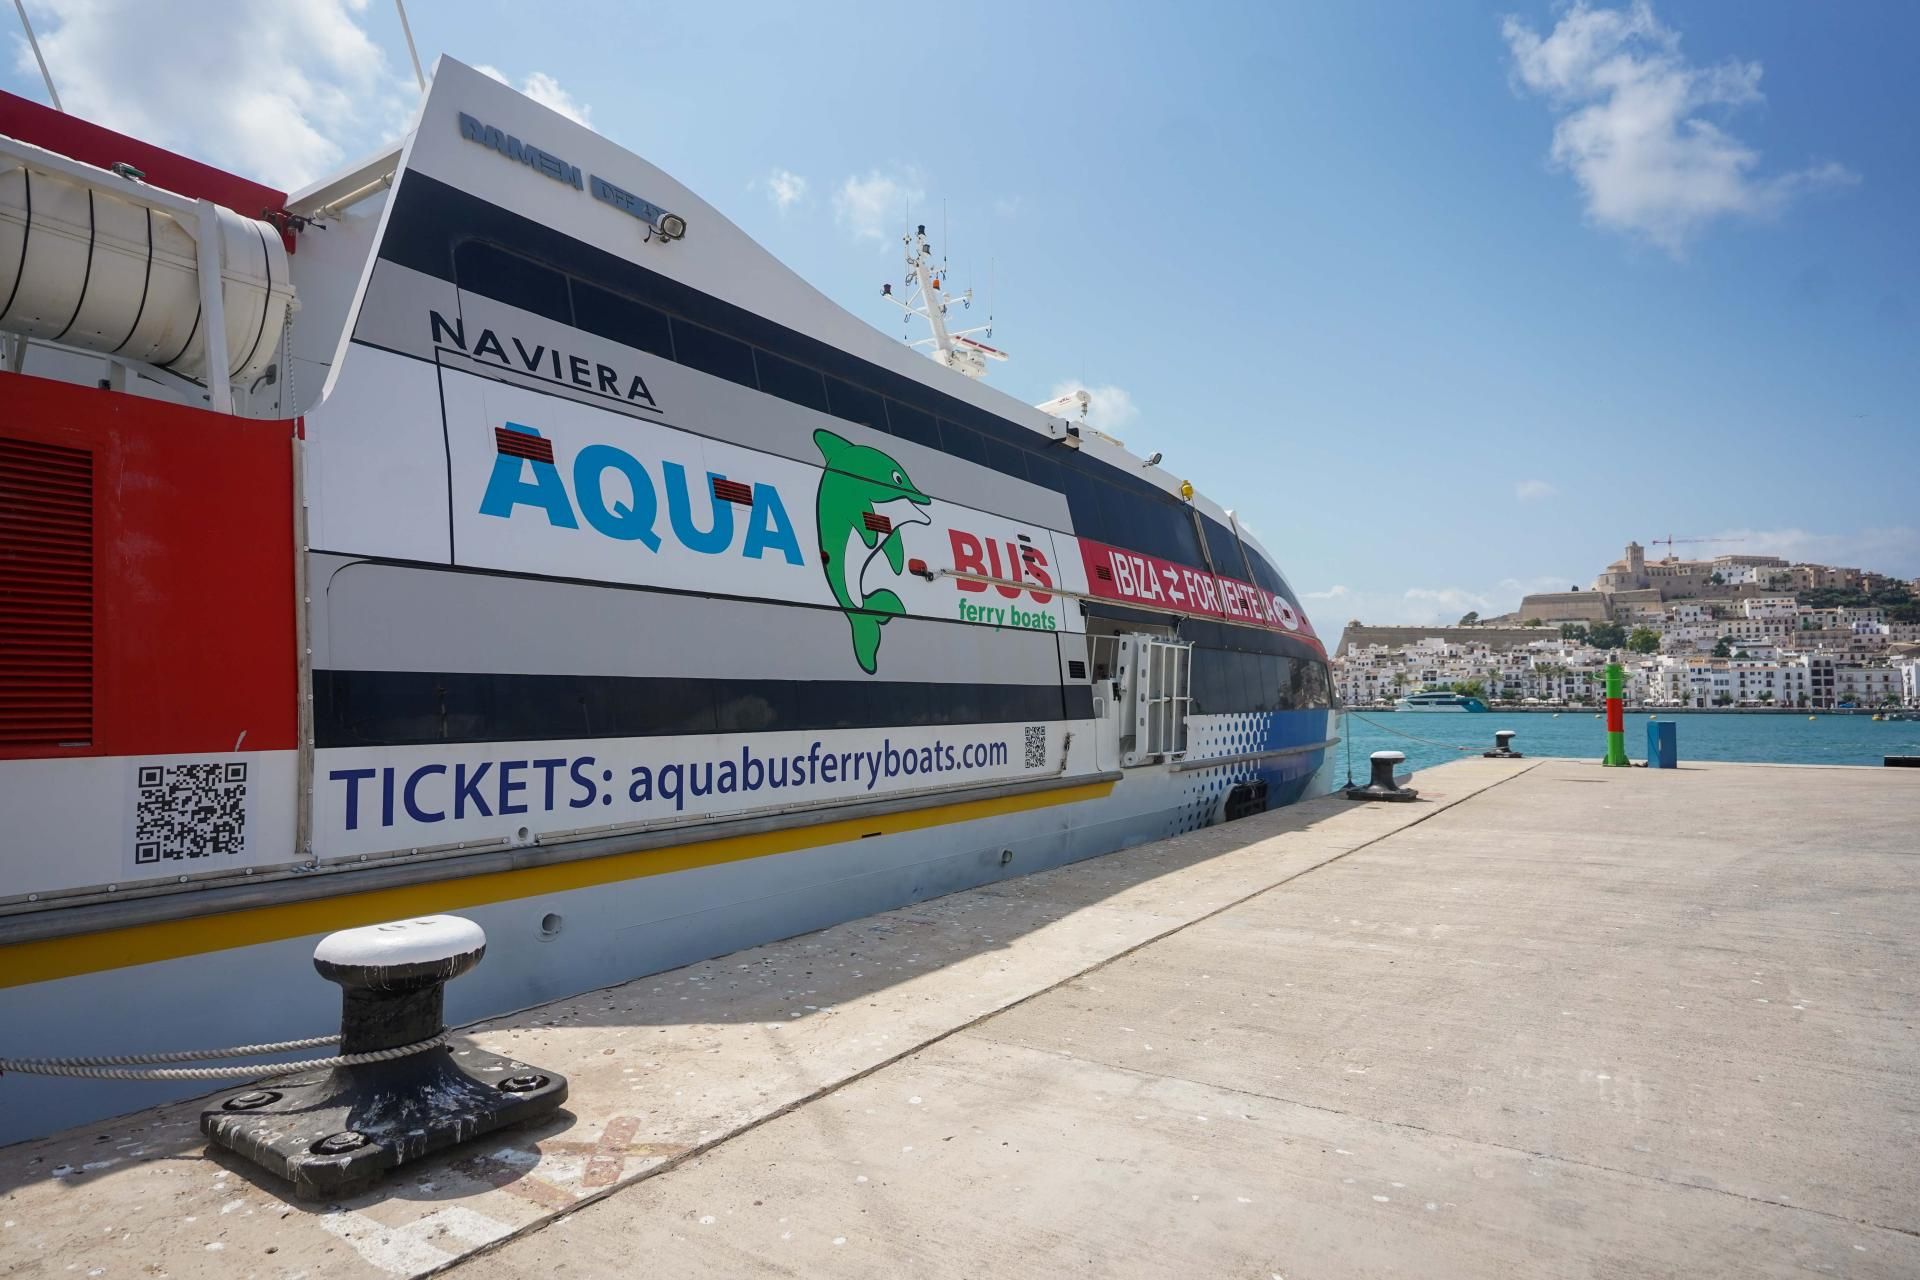 PERIODICODEIBIZA: Aquabus Jet revoluciona su flota con dos buques nuevos de última generación